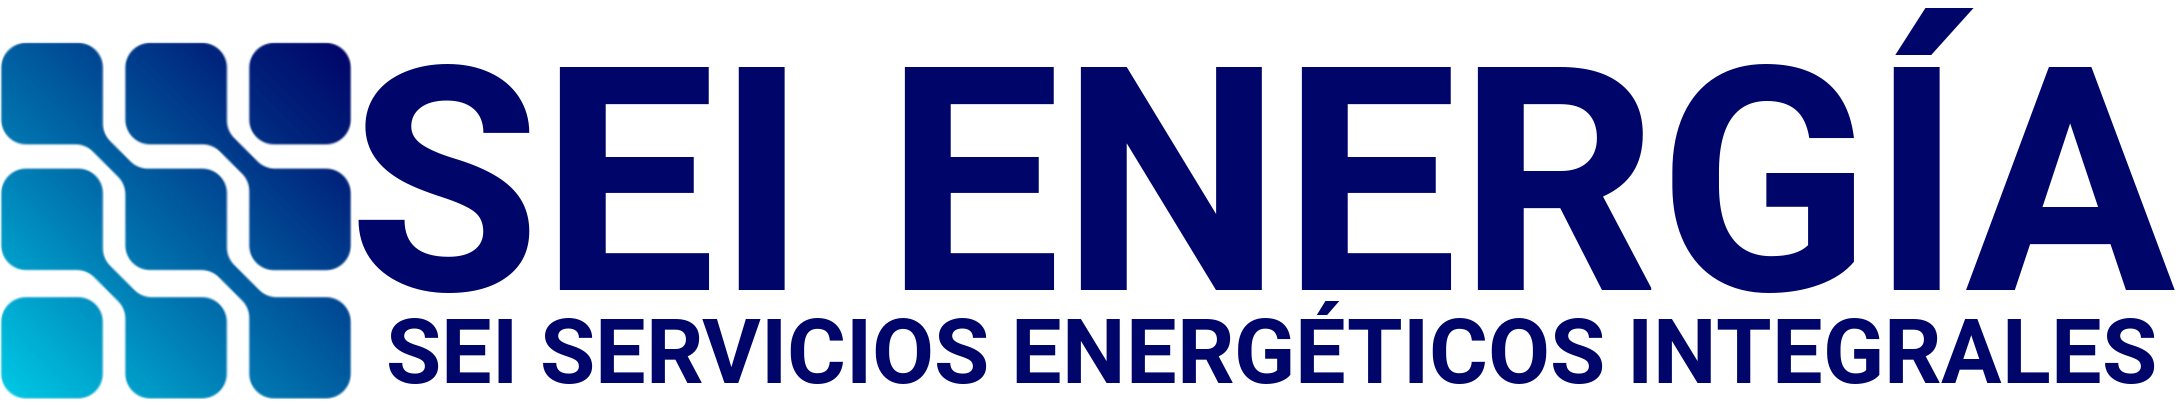 Logo-sei_servicios_energeticos_integrales